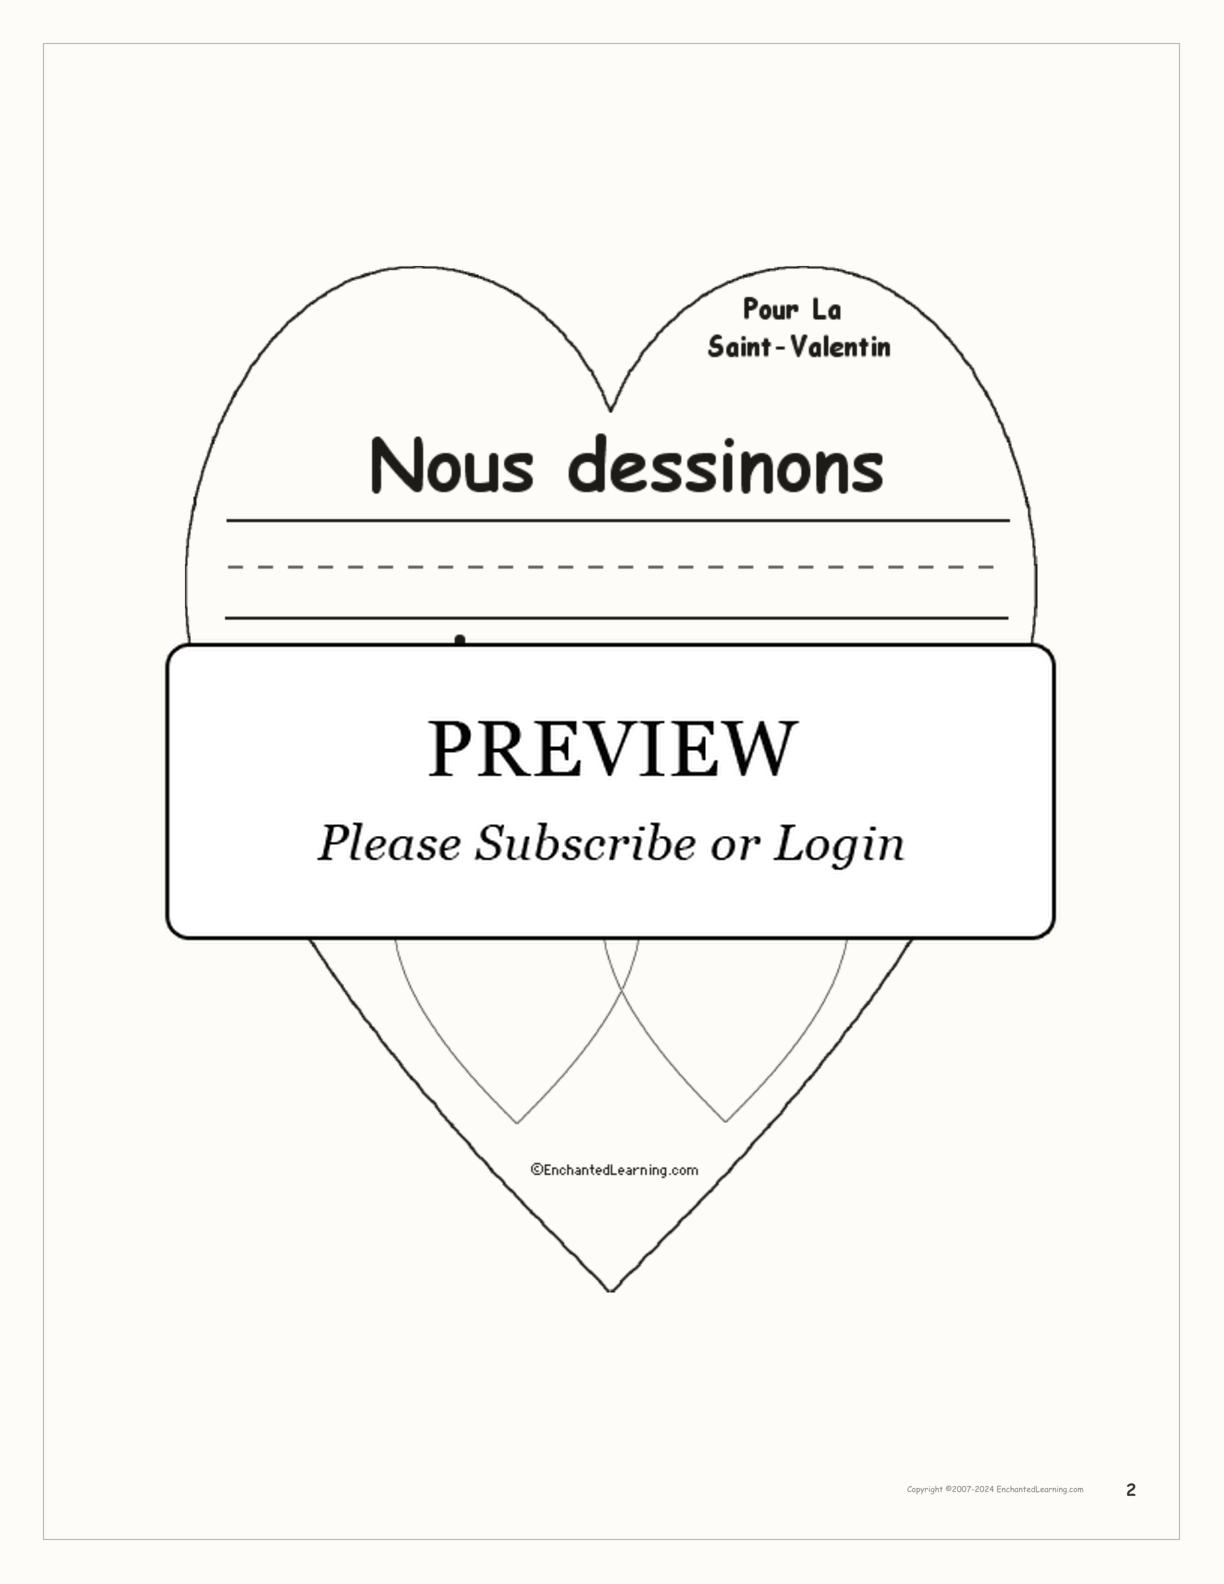 Pour la Saint-Valentin interactive worksheet page 2